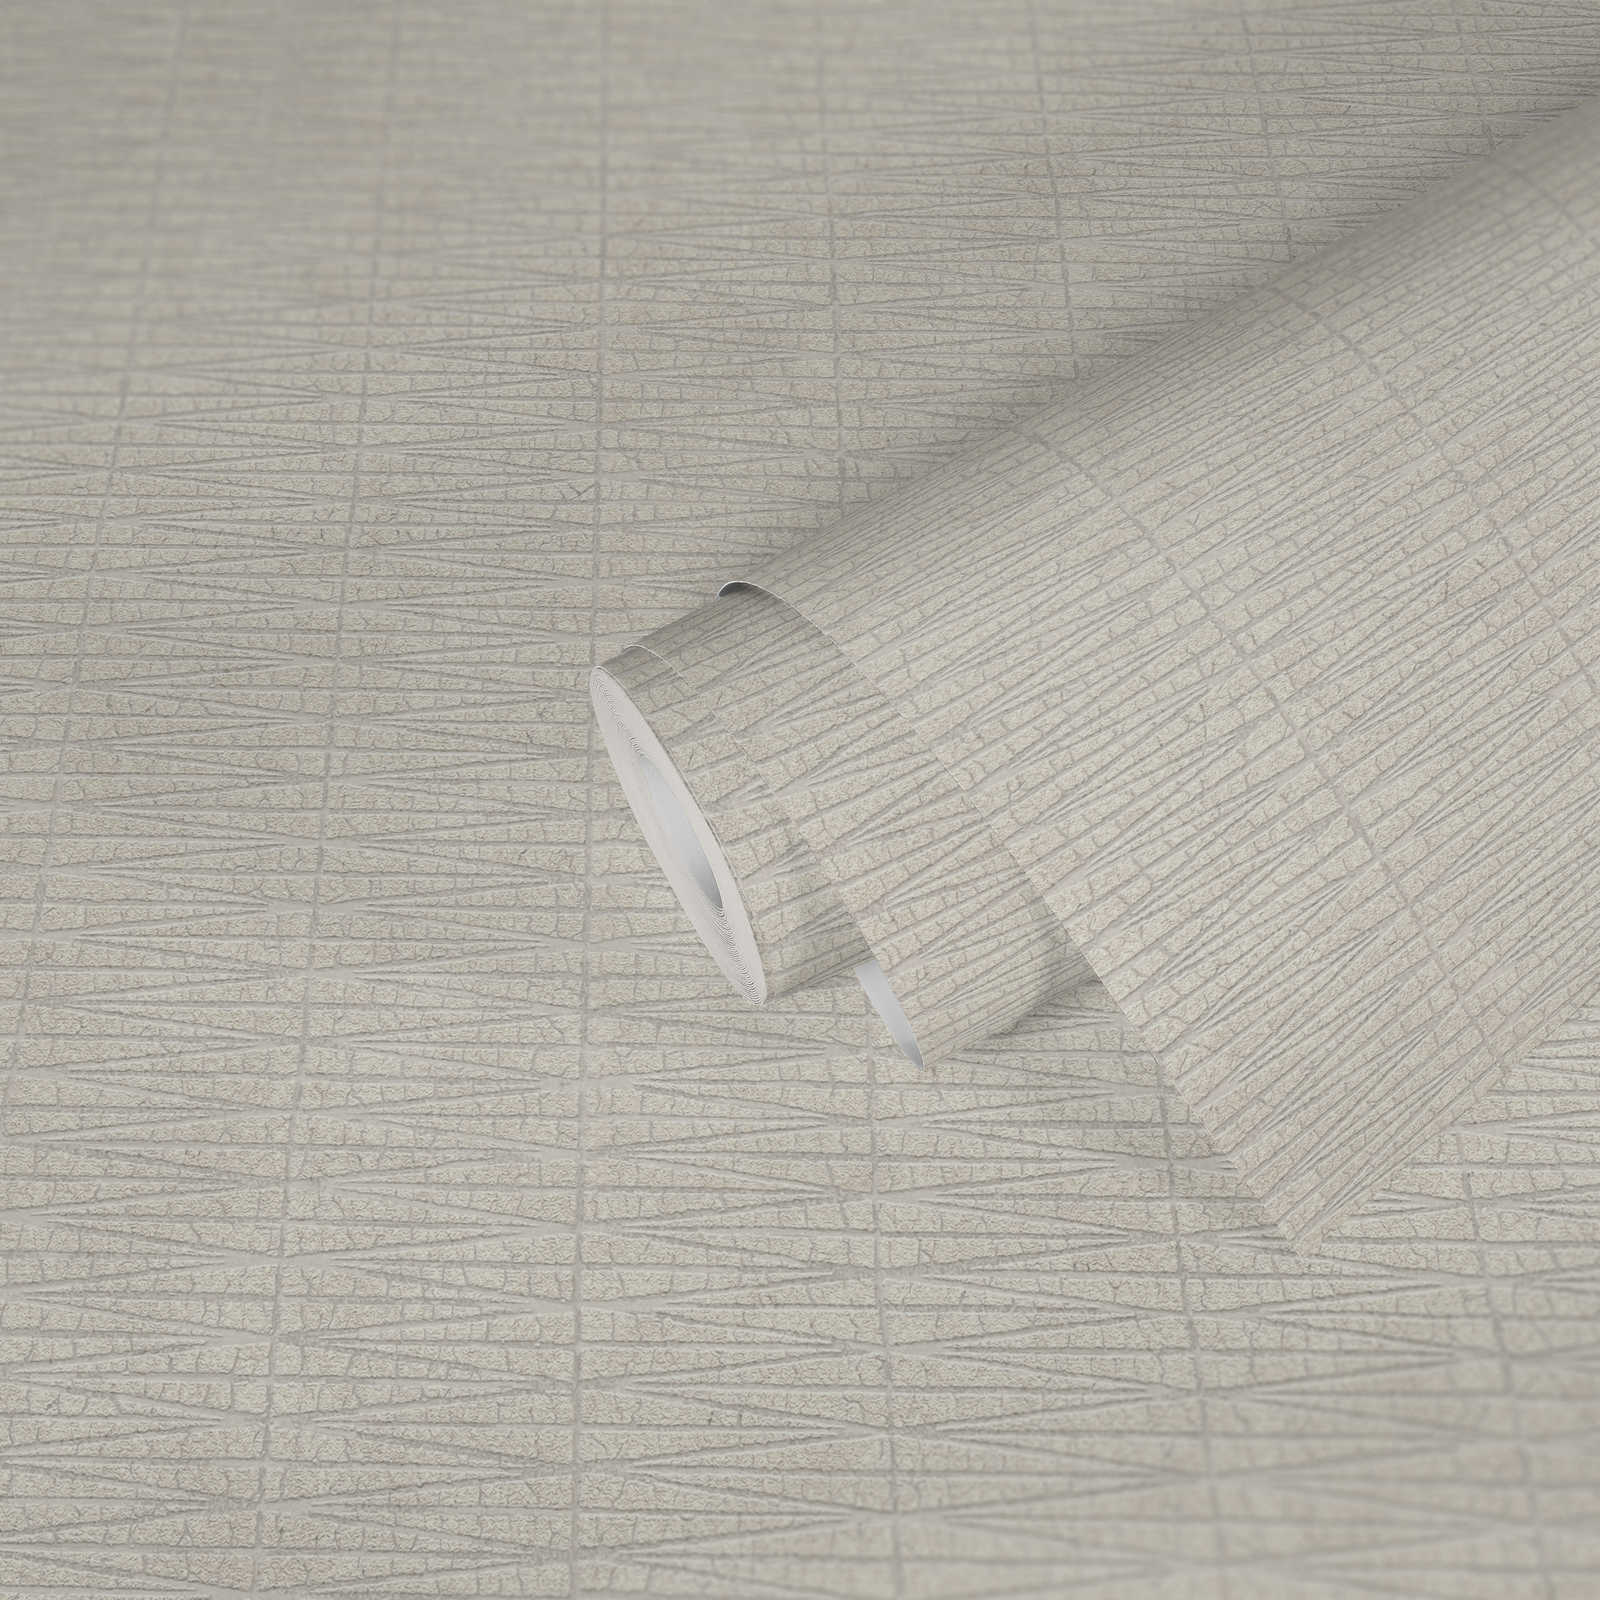             Crèmewit behang met grafisch natuurmotief - metallic, wit
        